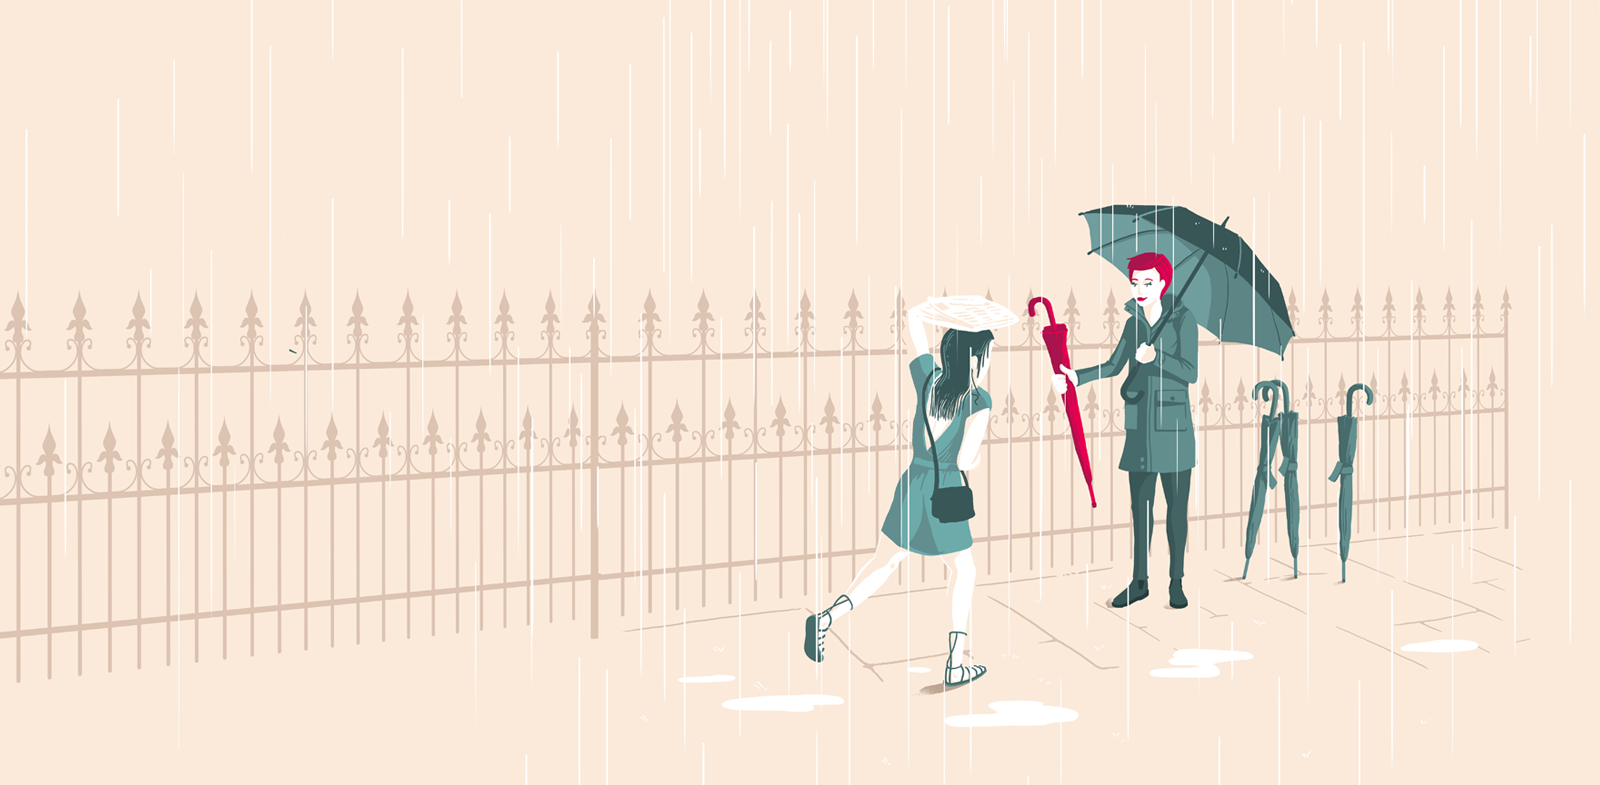 Eine nasse Frau rennt im Regen auf eine zweite Frau zu, die ihr ein Schirm bietet